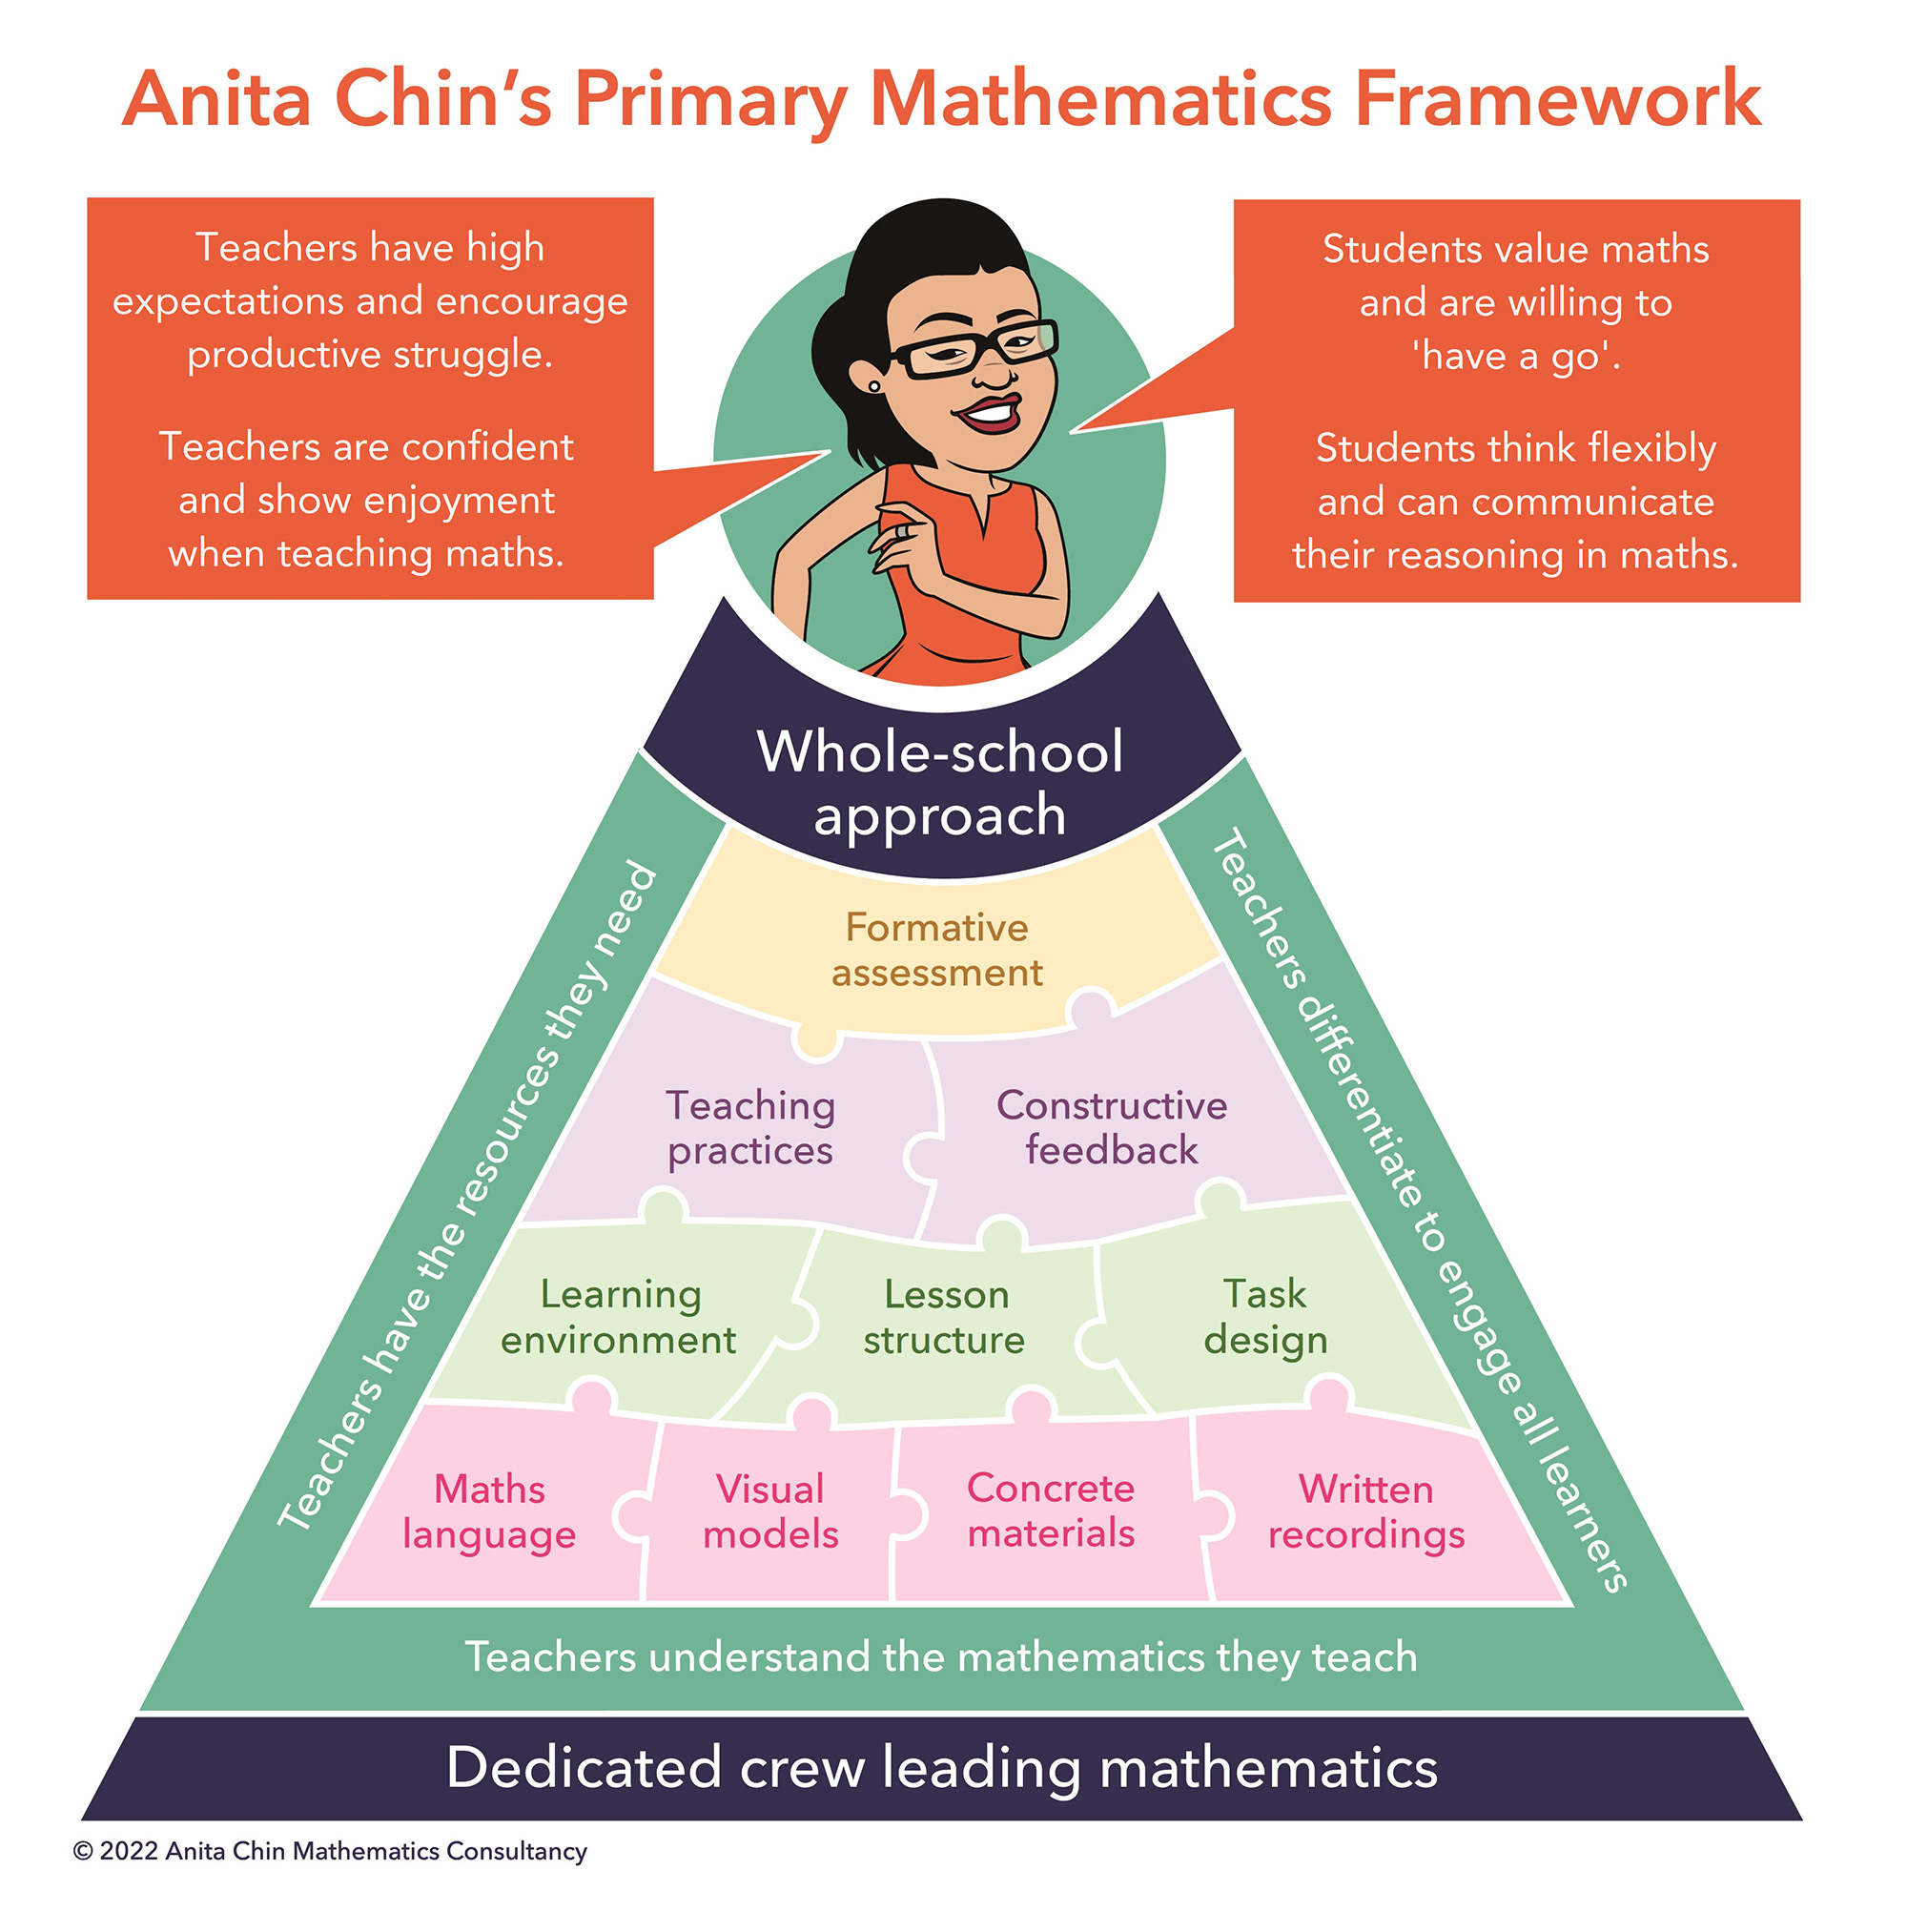 Anita Chin's Primary Mathematics Framework infographic